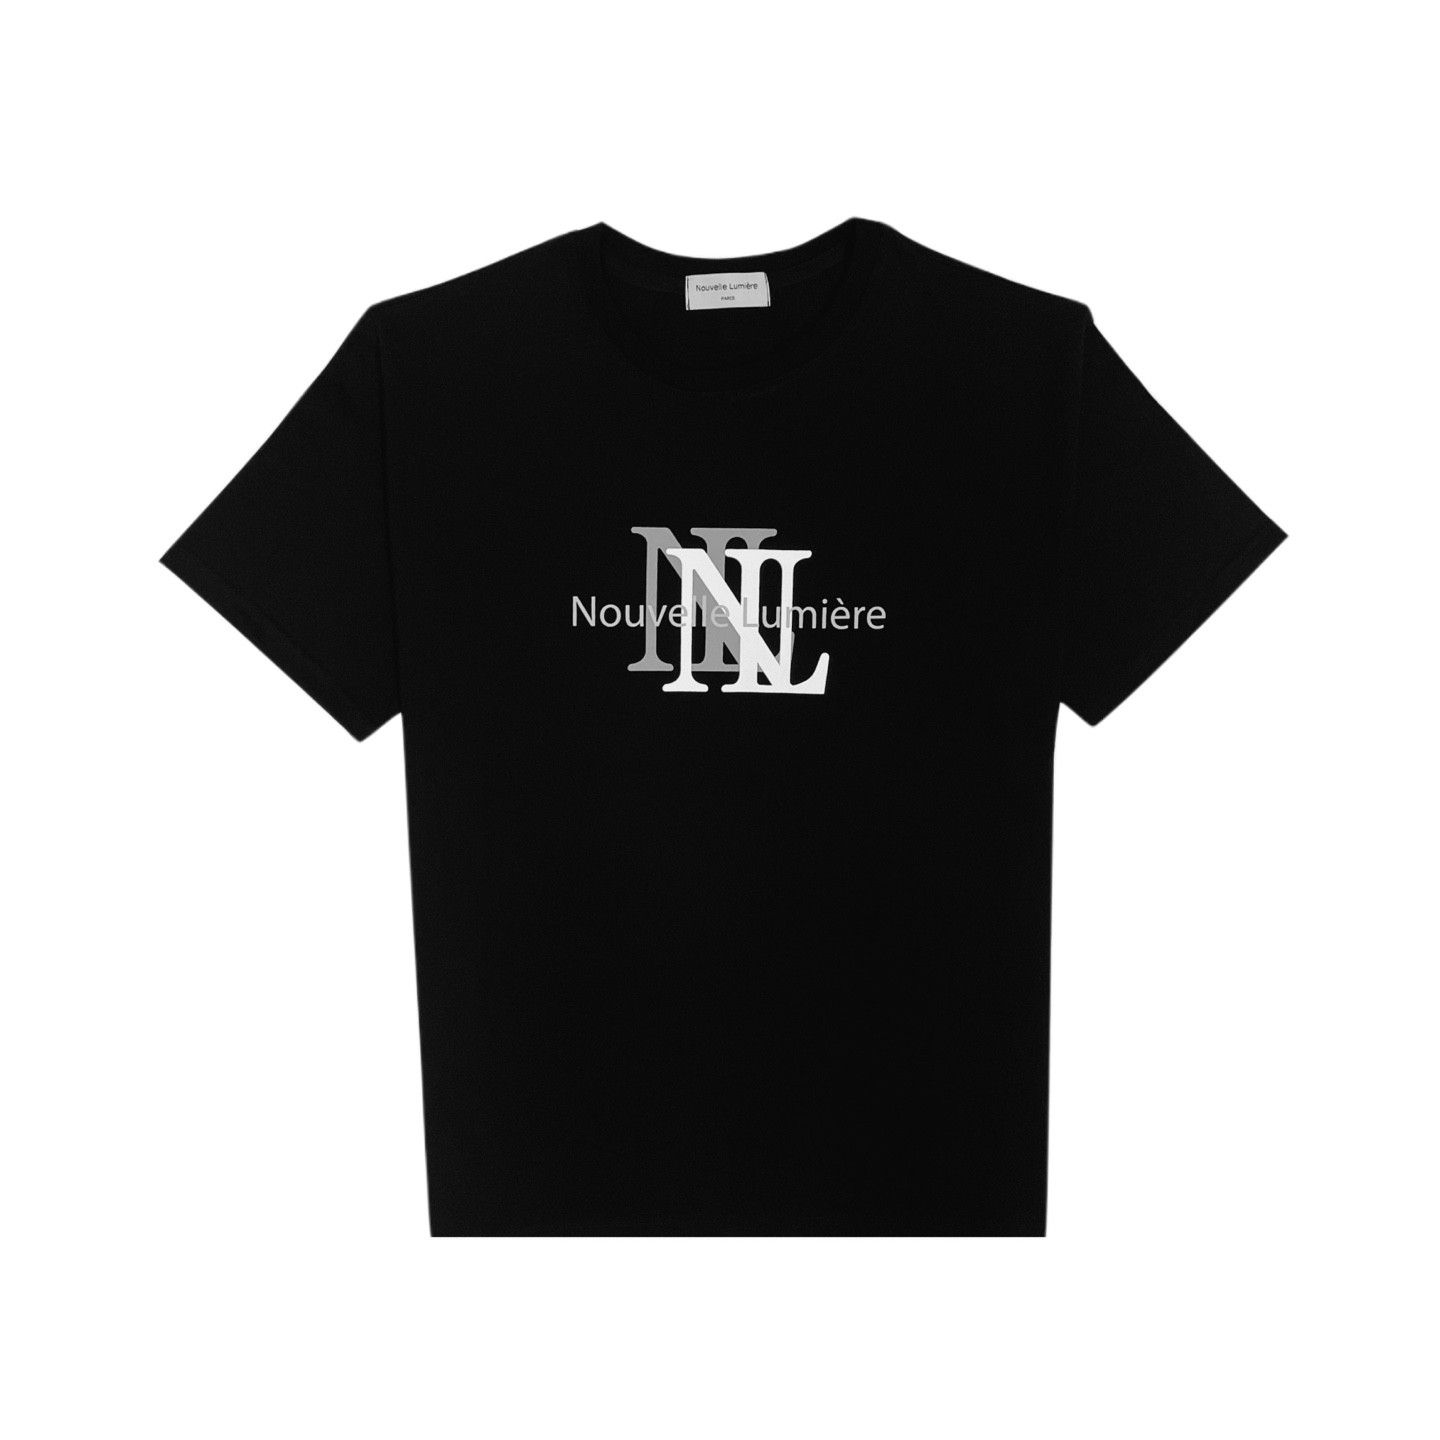 누벨르미에르 더블로고 블랙 반팔 티셔츠